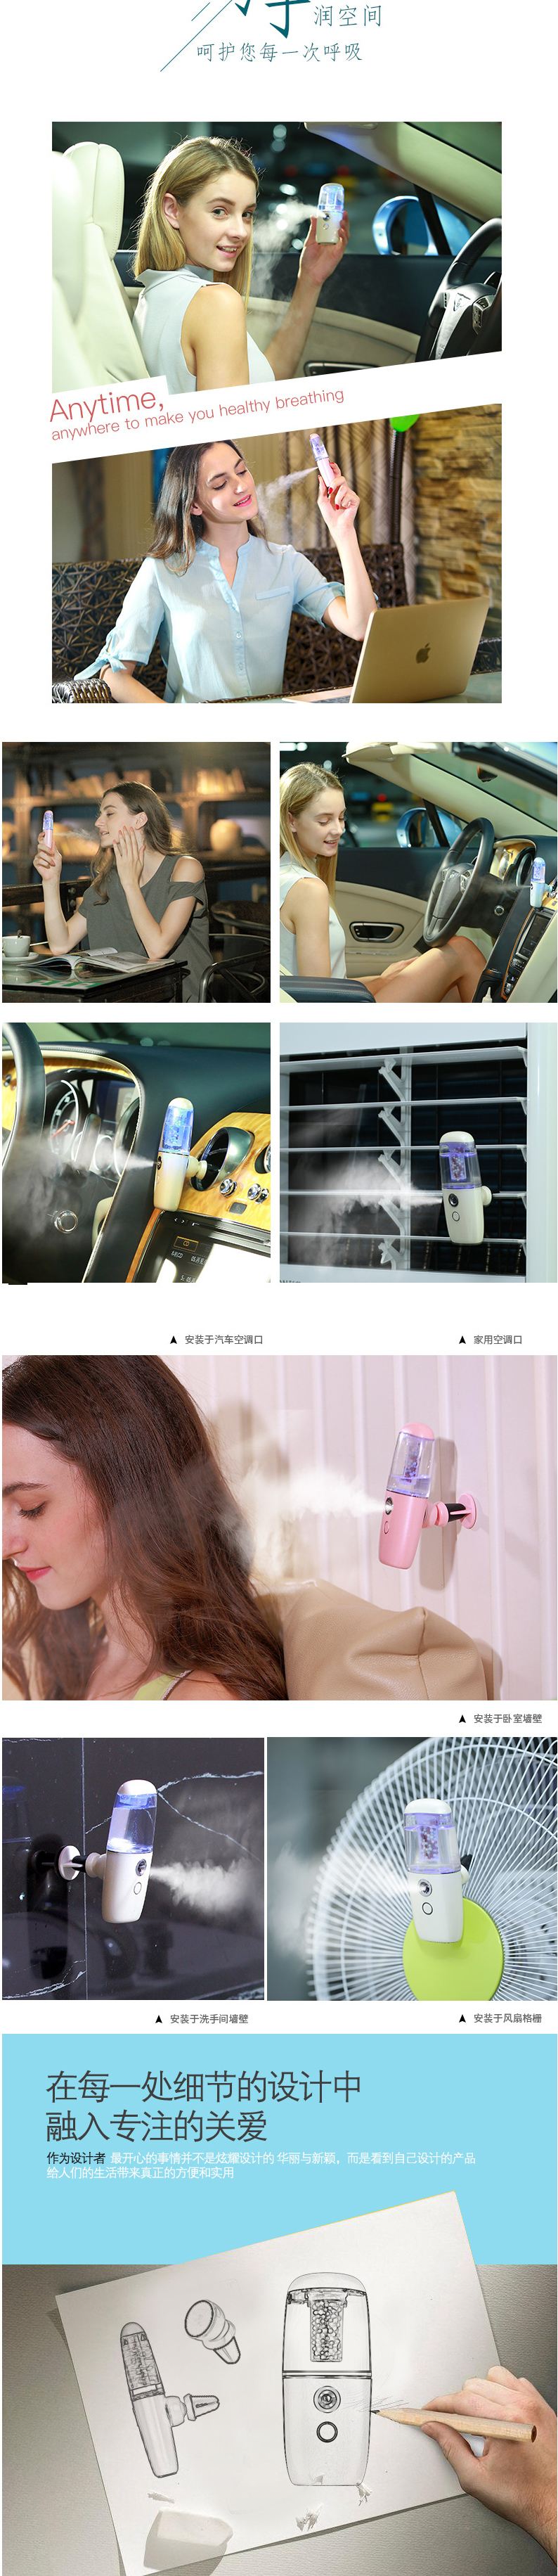 实物负离子补水喷雾仪 蒸脸器加湿器 雾化美容仪 USB充电款带车标